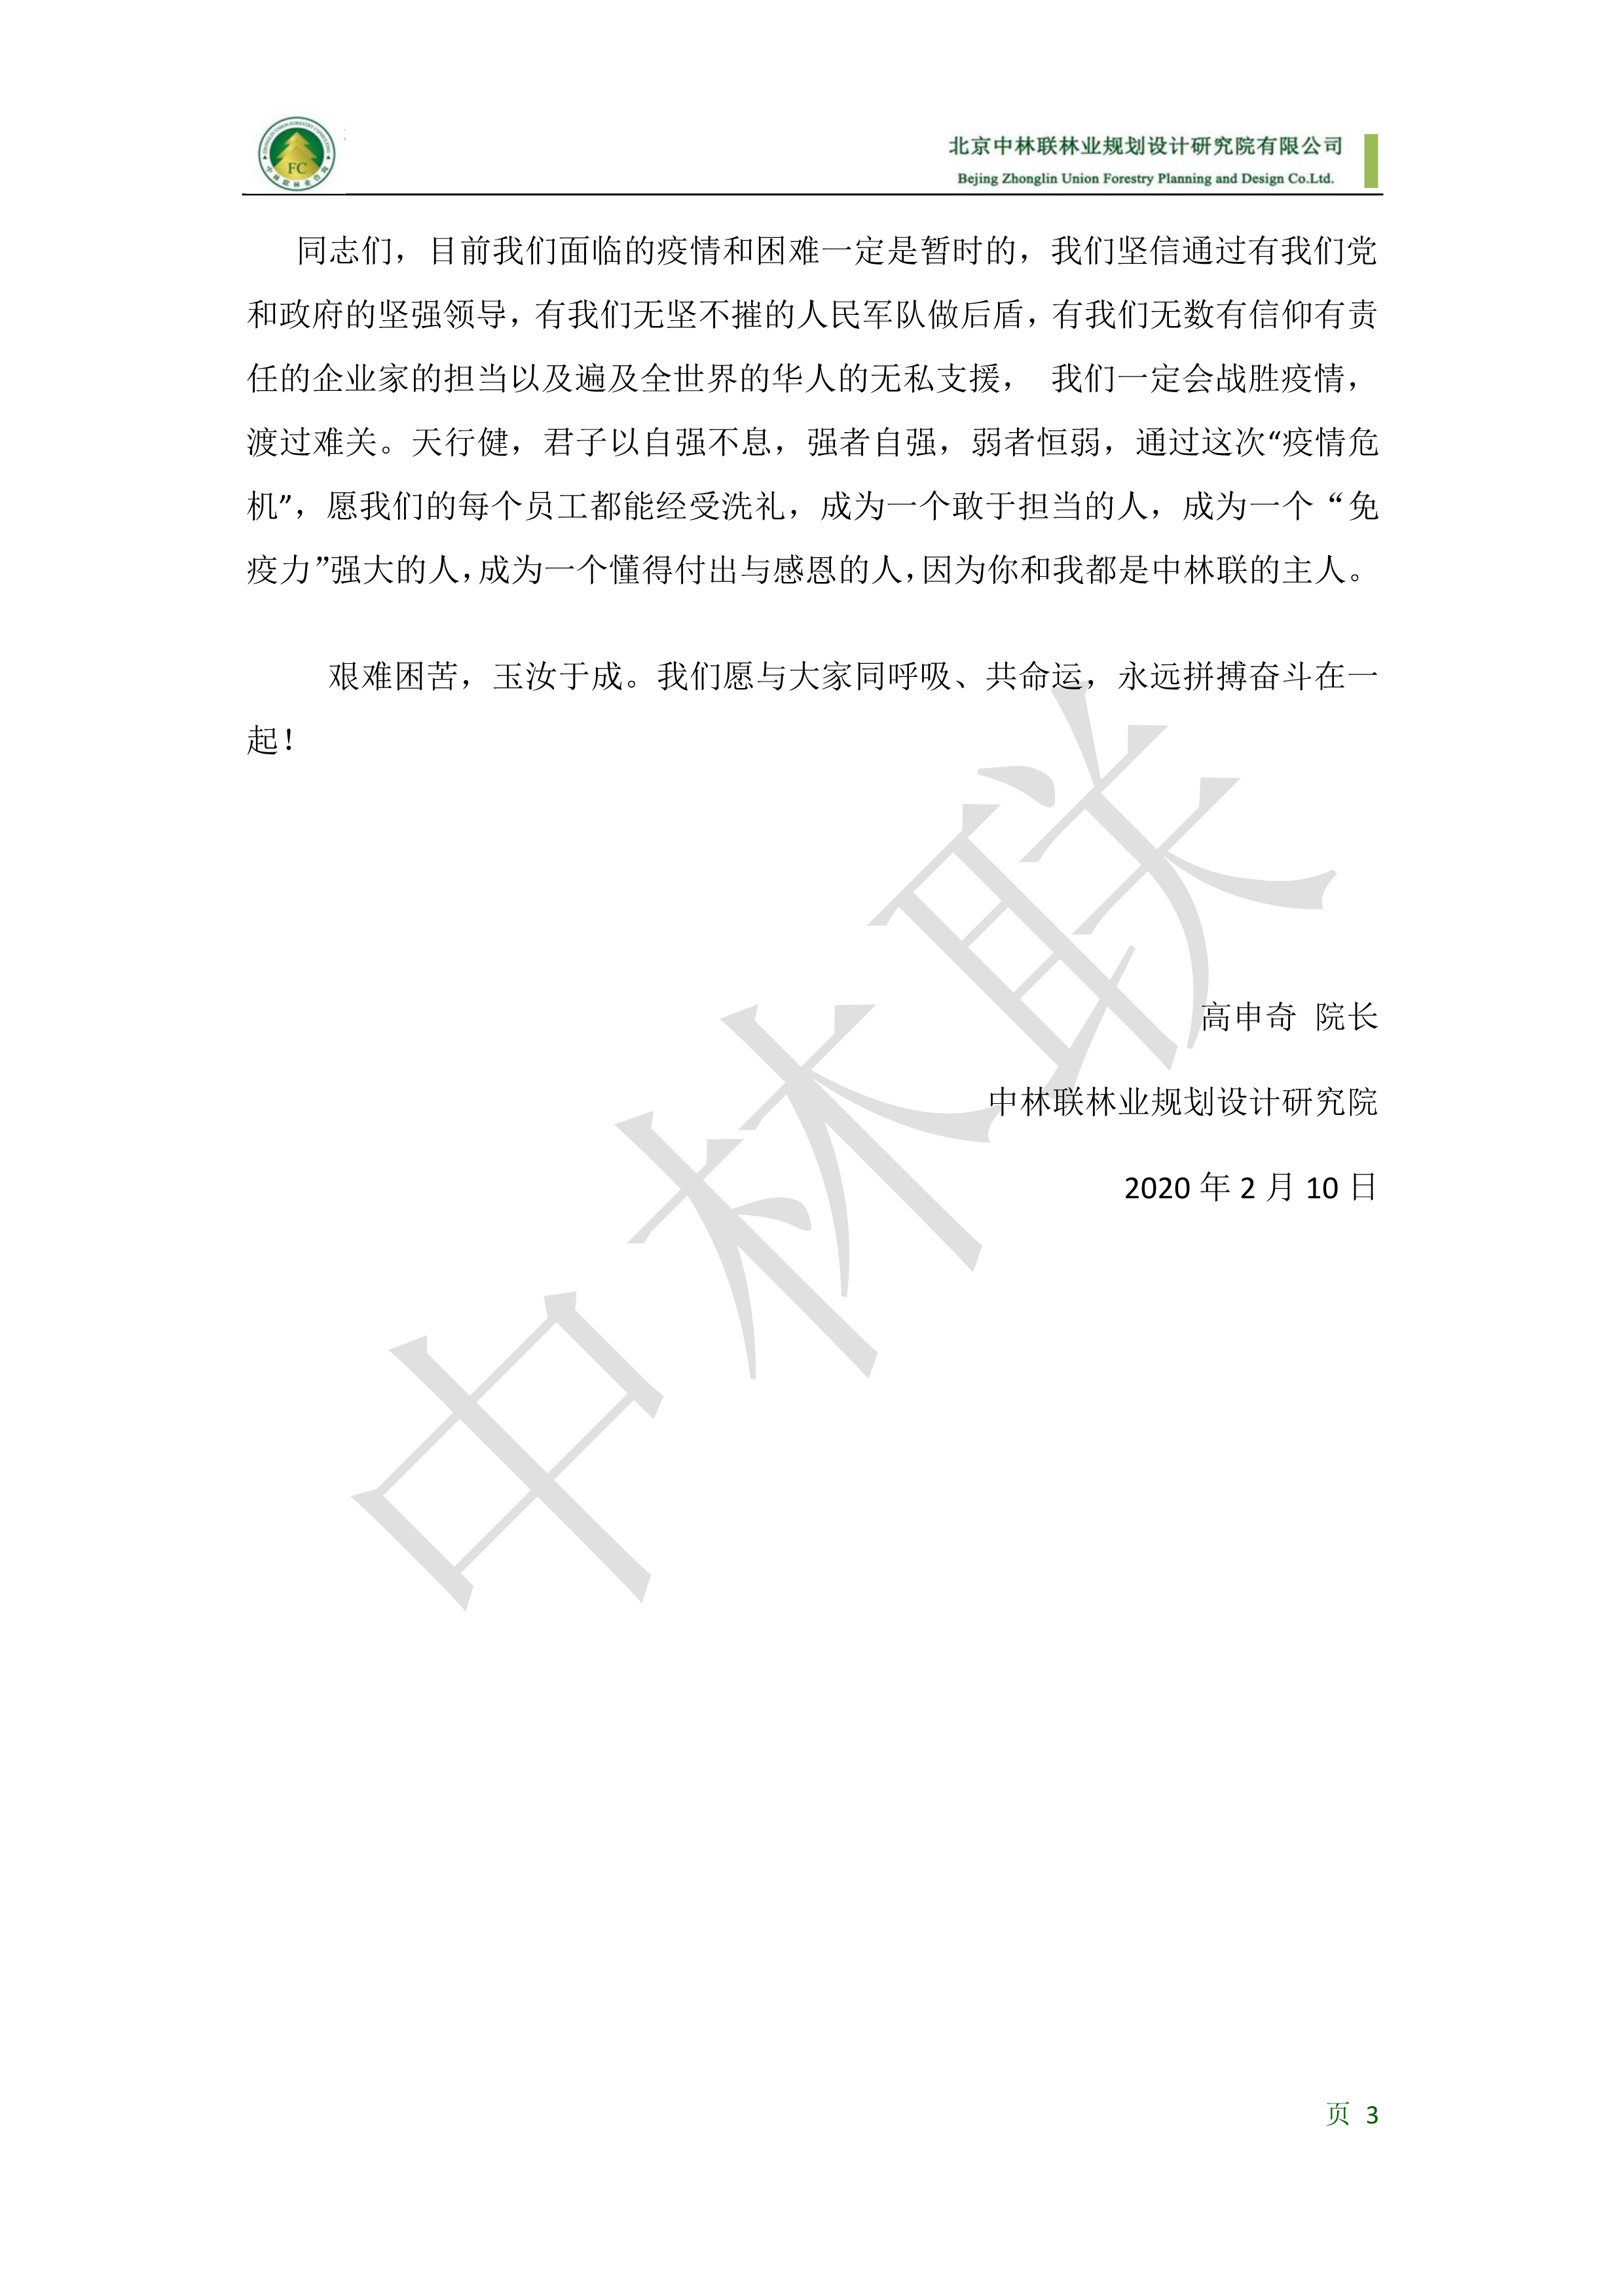 致中林联全体员工的一封信2020210--对外公众号版(1)_3.jpg